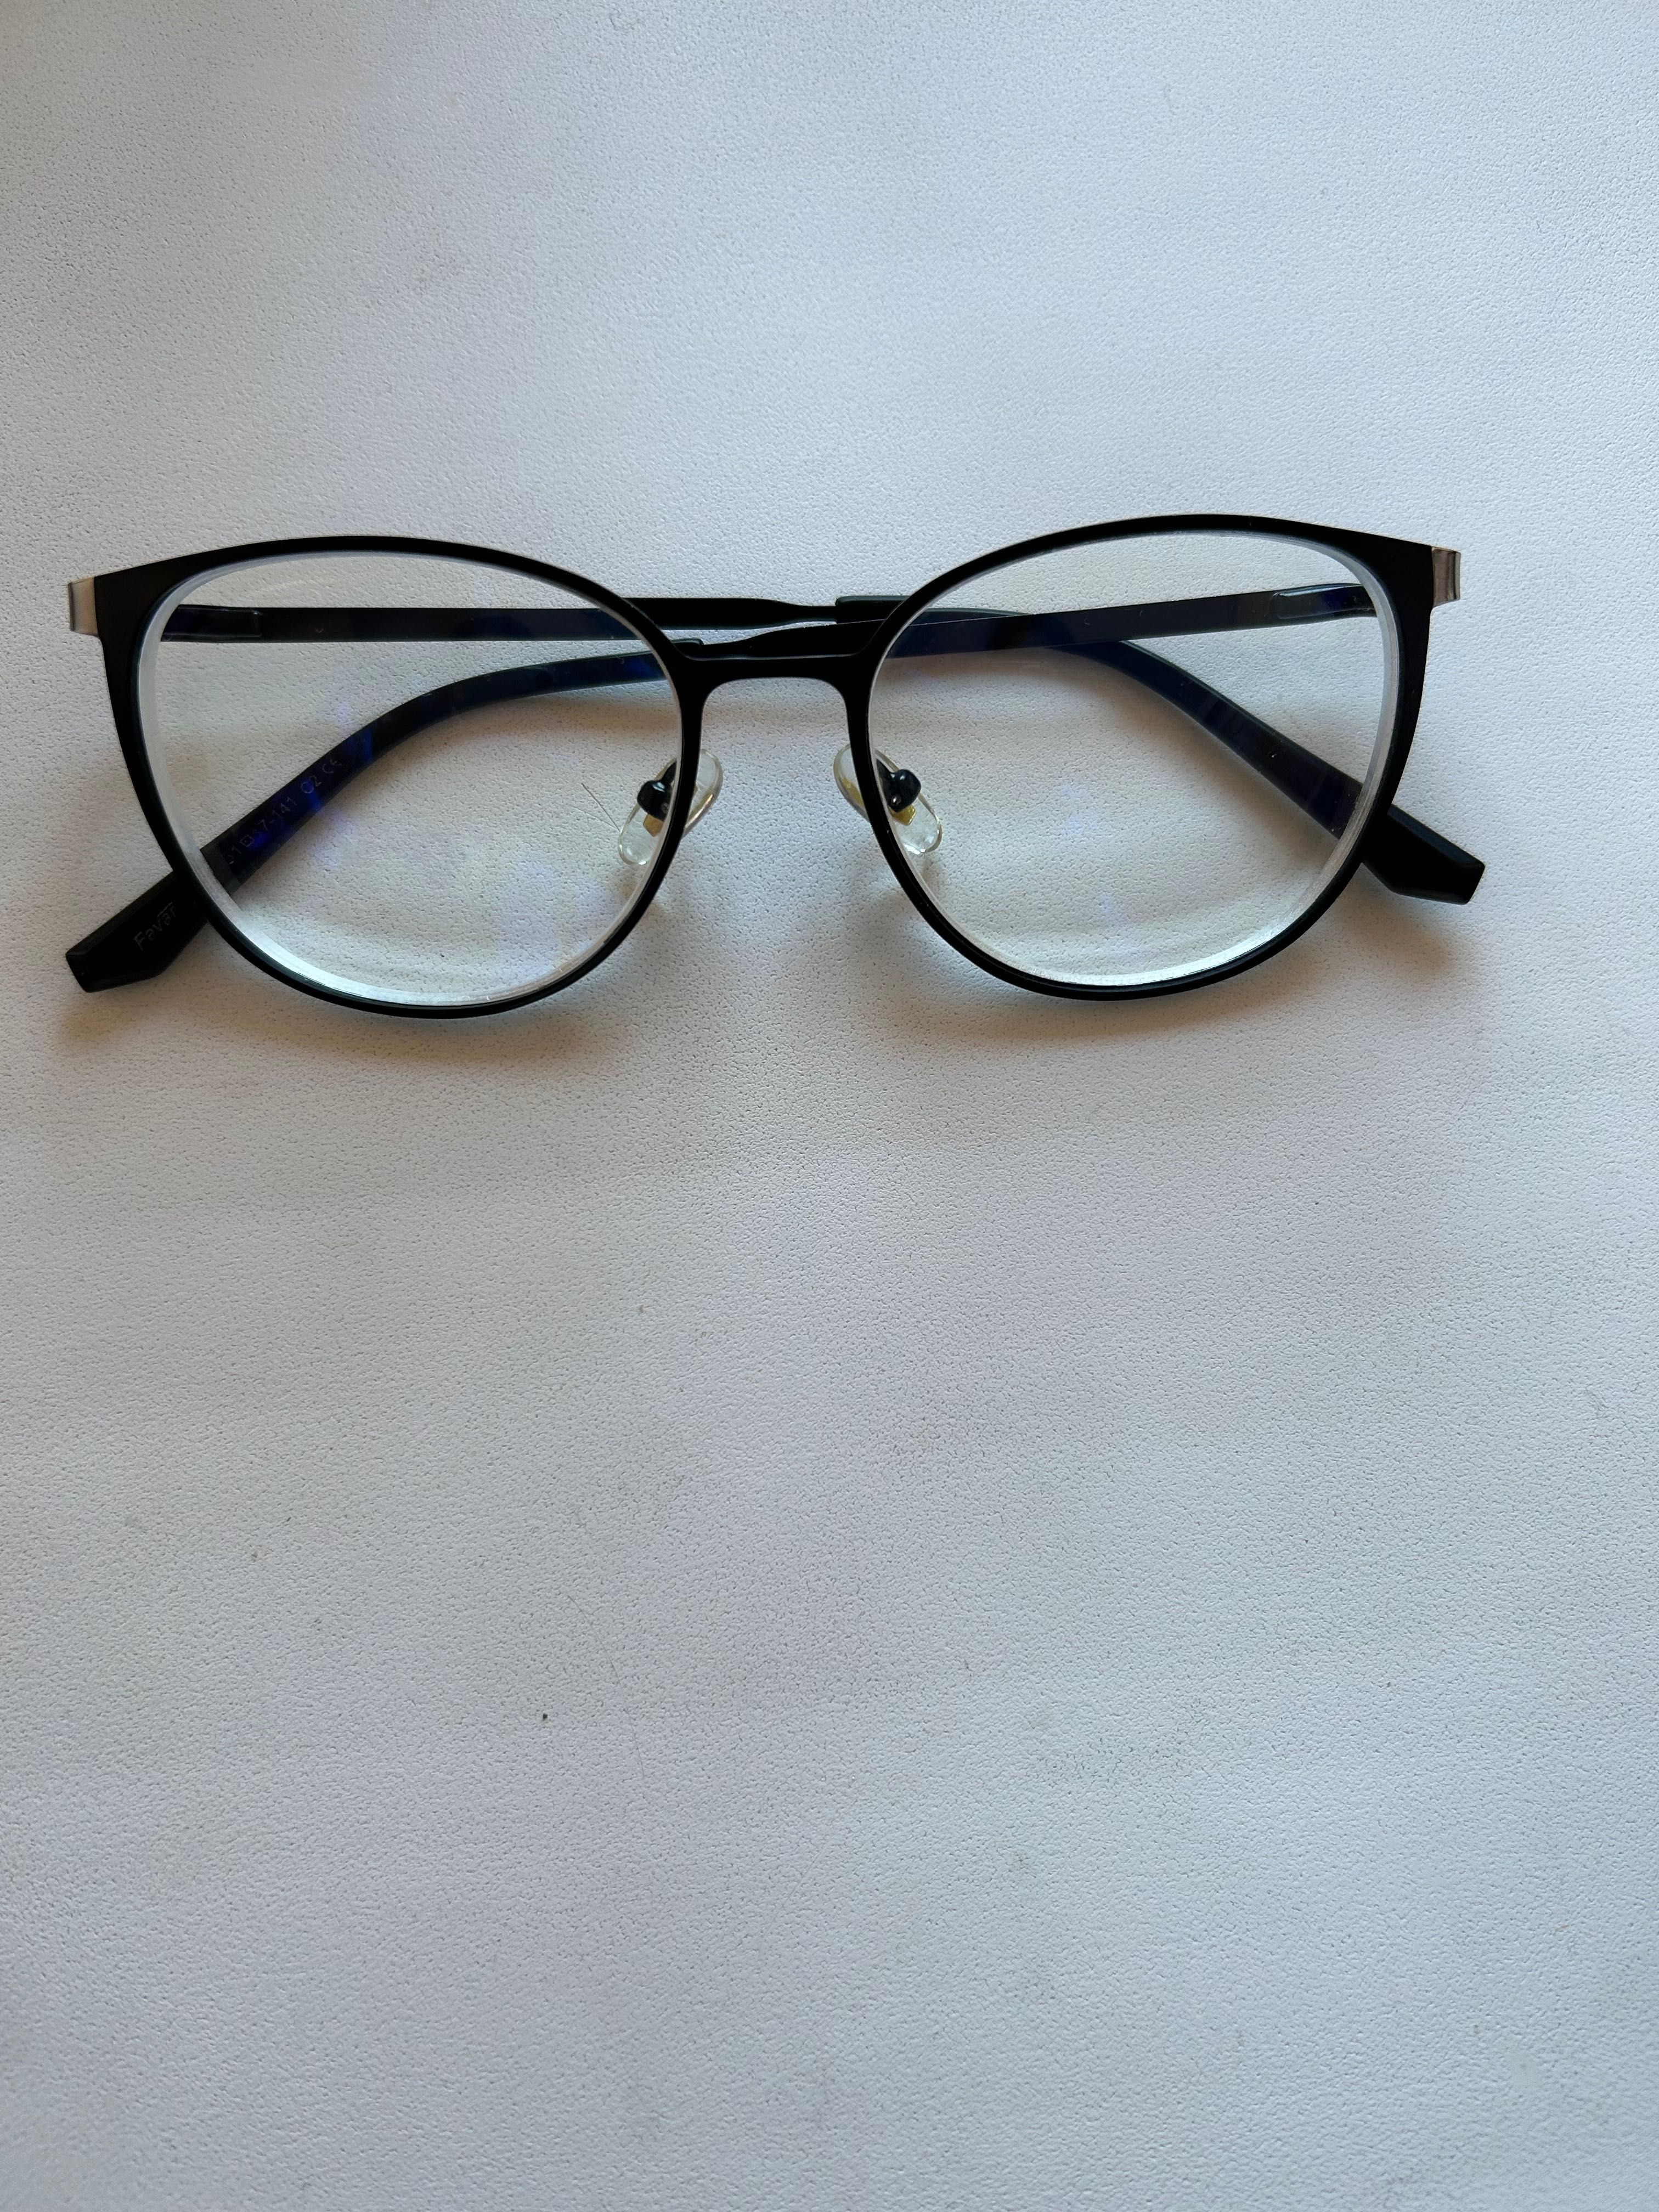 Продам очки для зрения